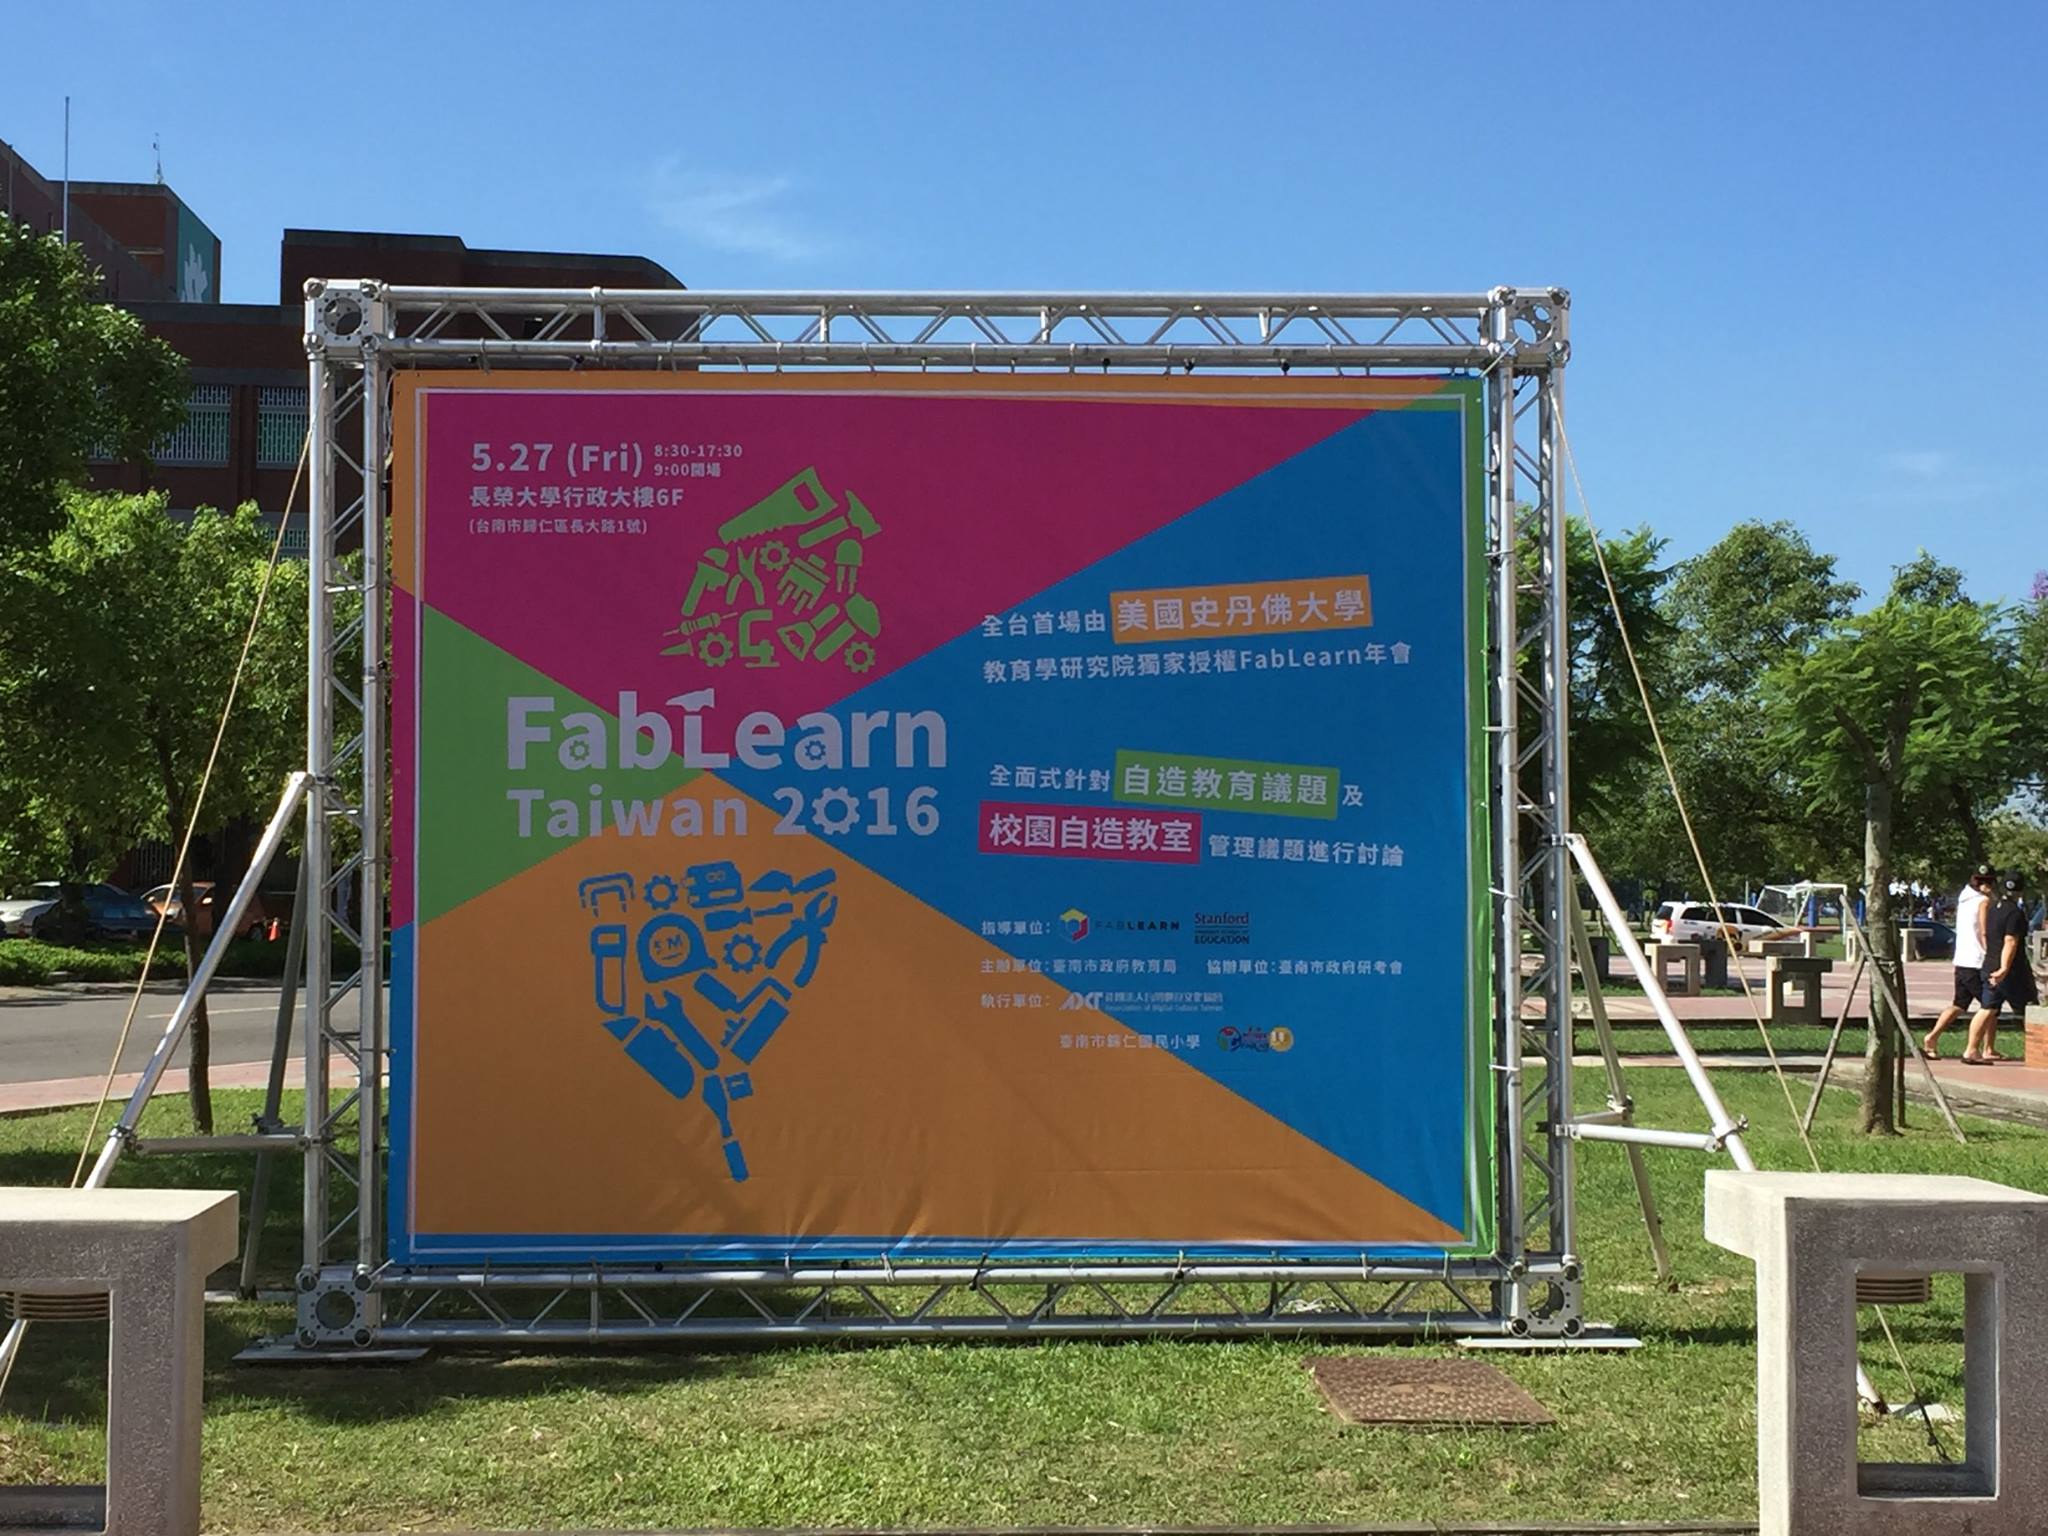 今年的 Fablearn Taiwan 在台南舉行